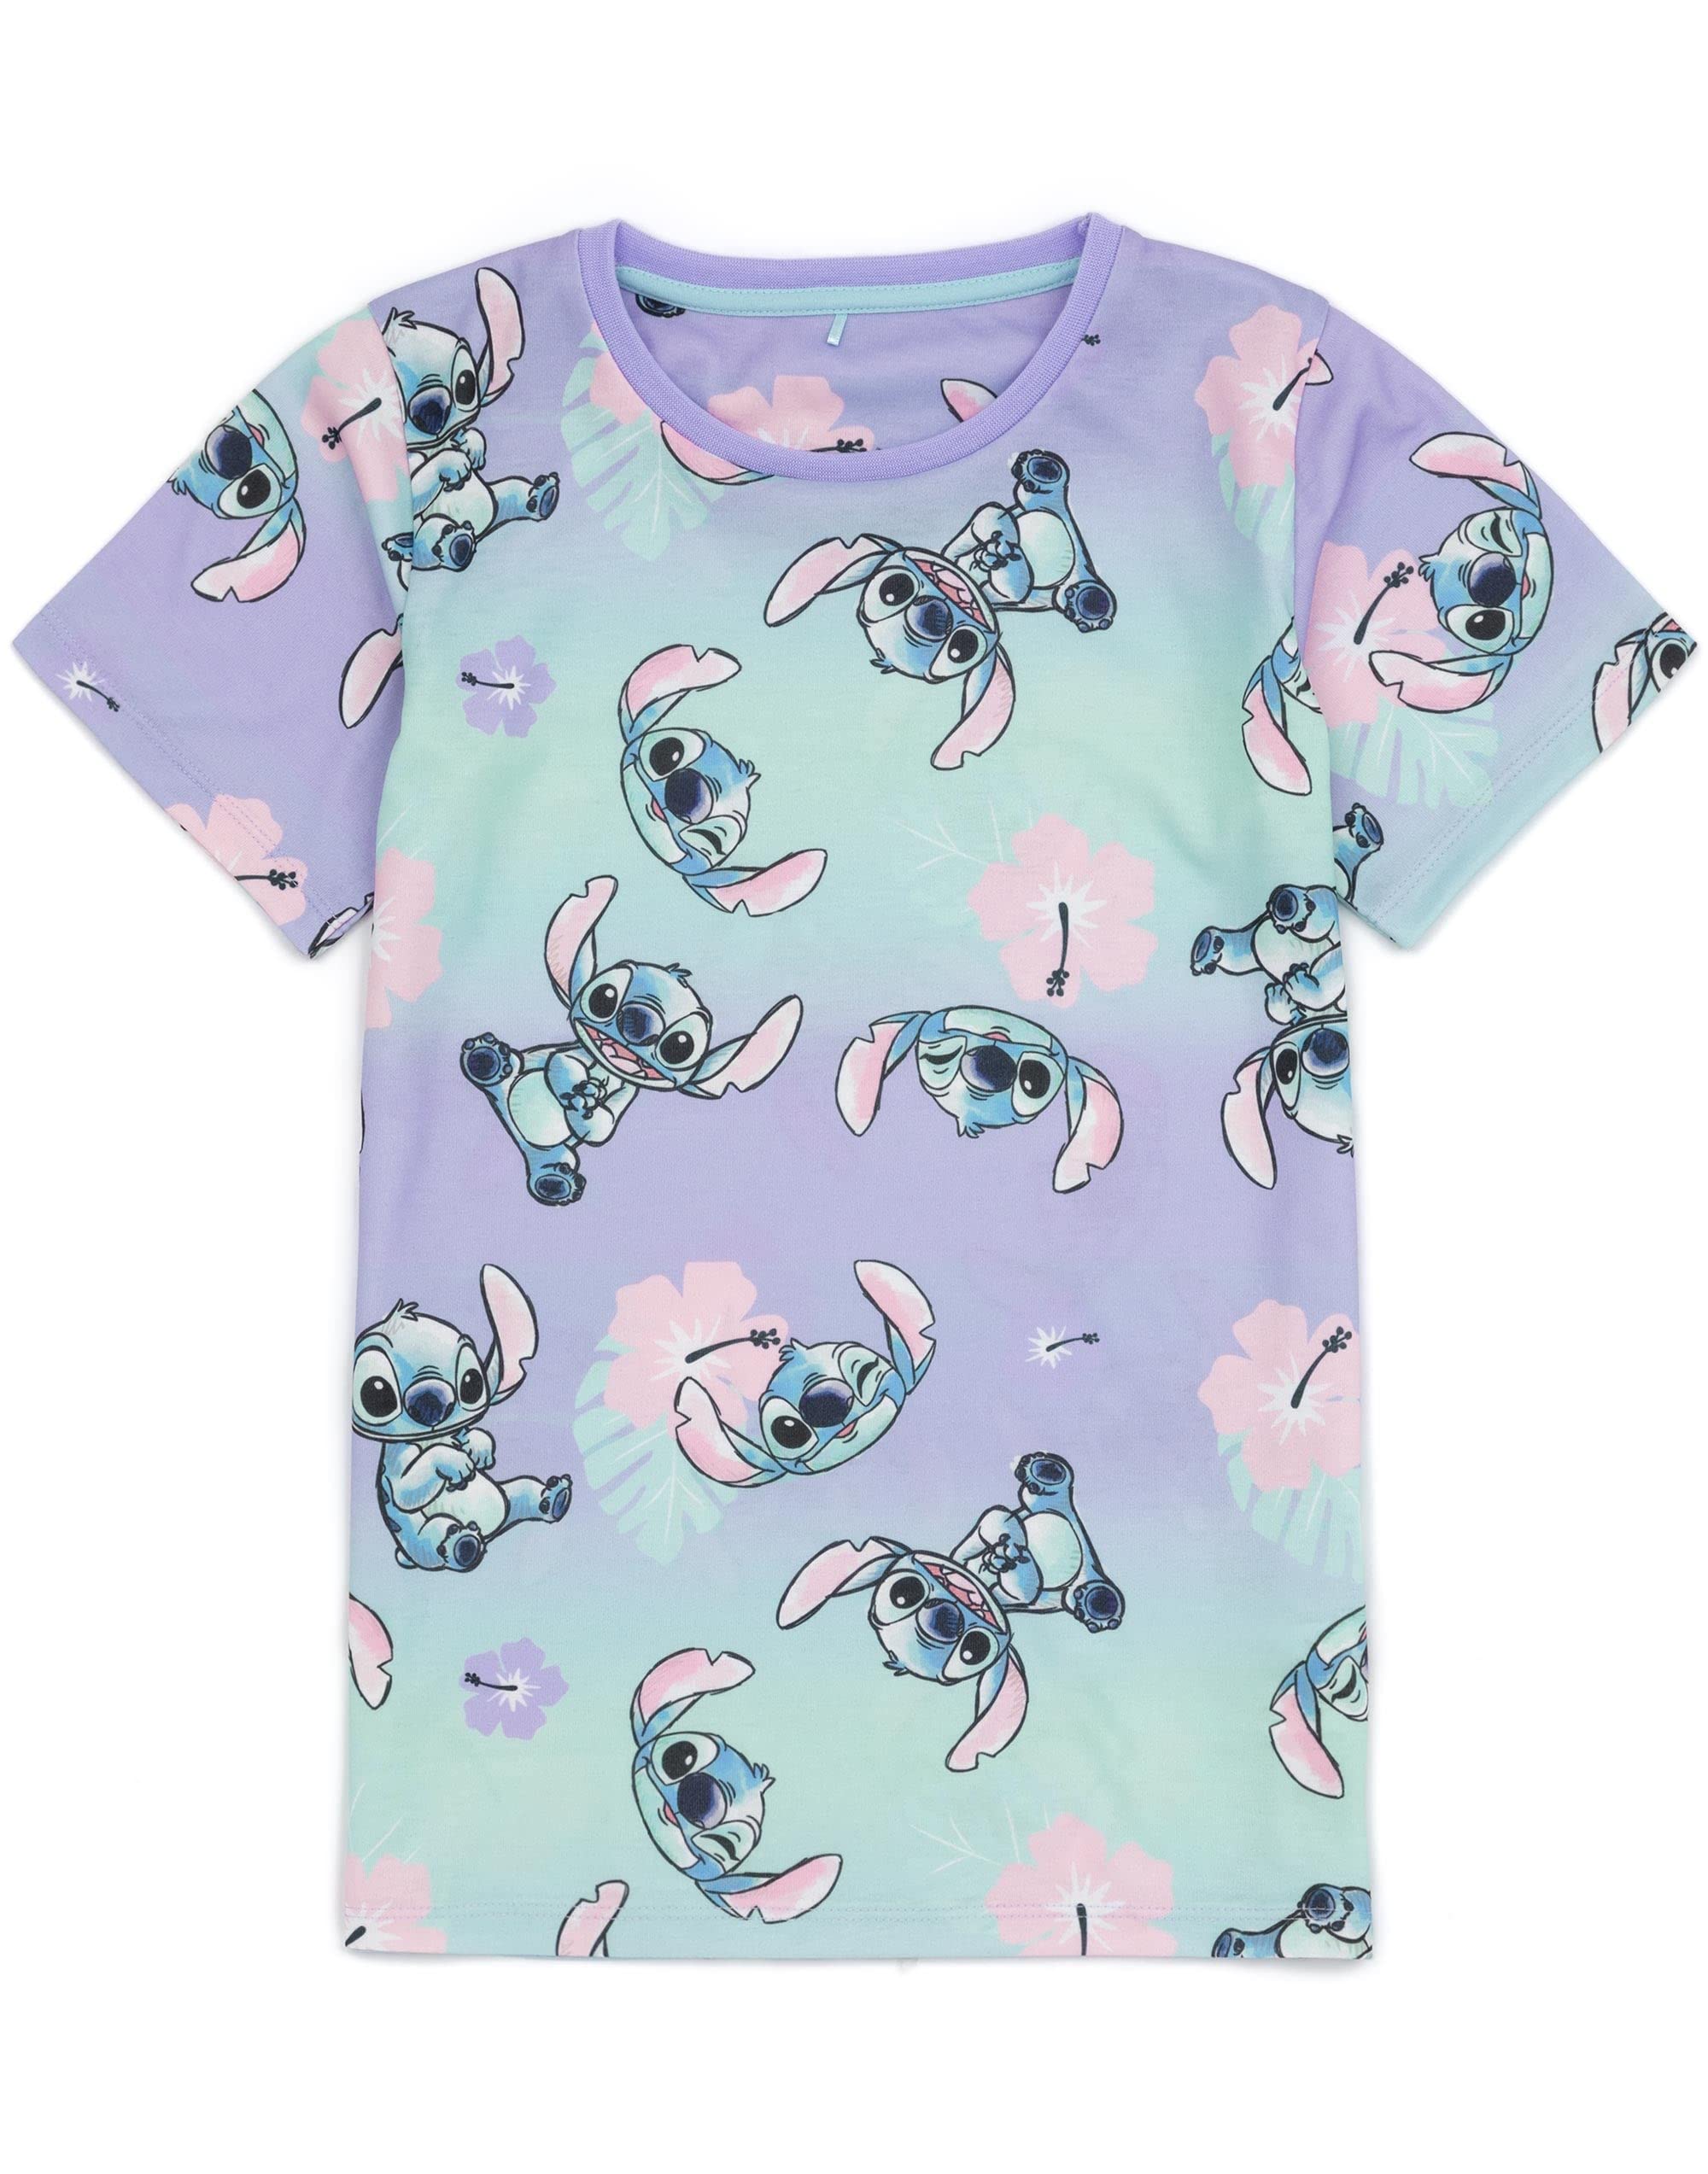 Disney Lilo And Stitch Girls 2 Pack Pyjamas Kids Just Chill Animated Alien T-Shirts Shorts Set Sleepwear